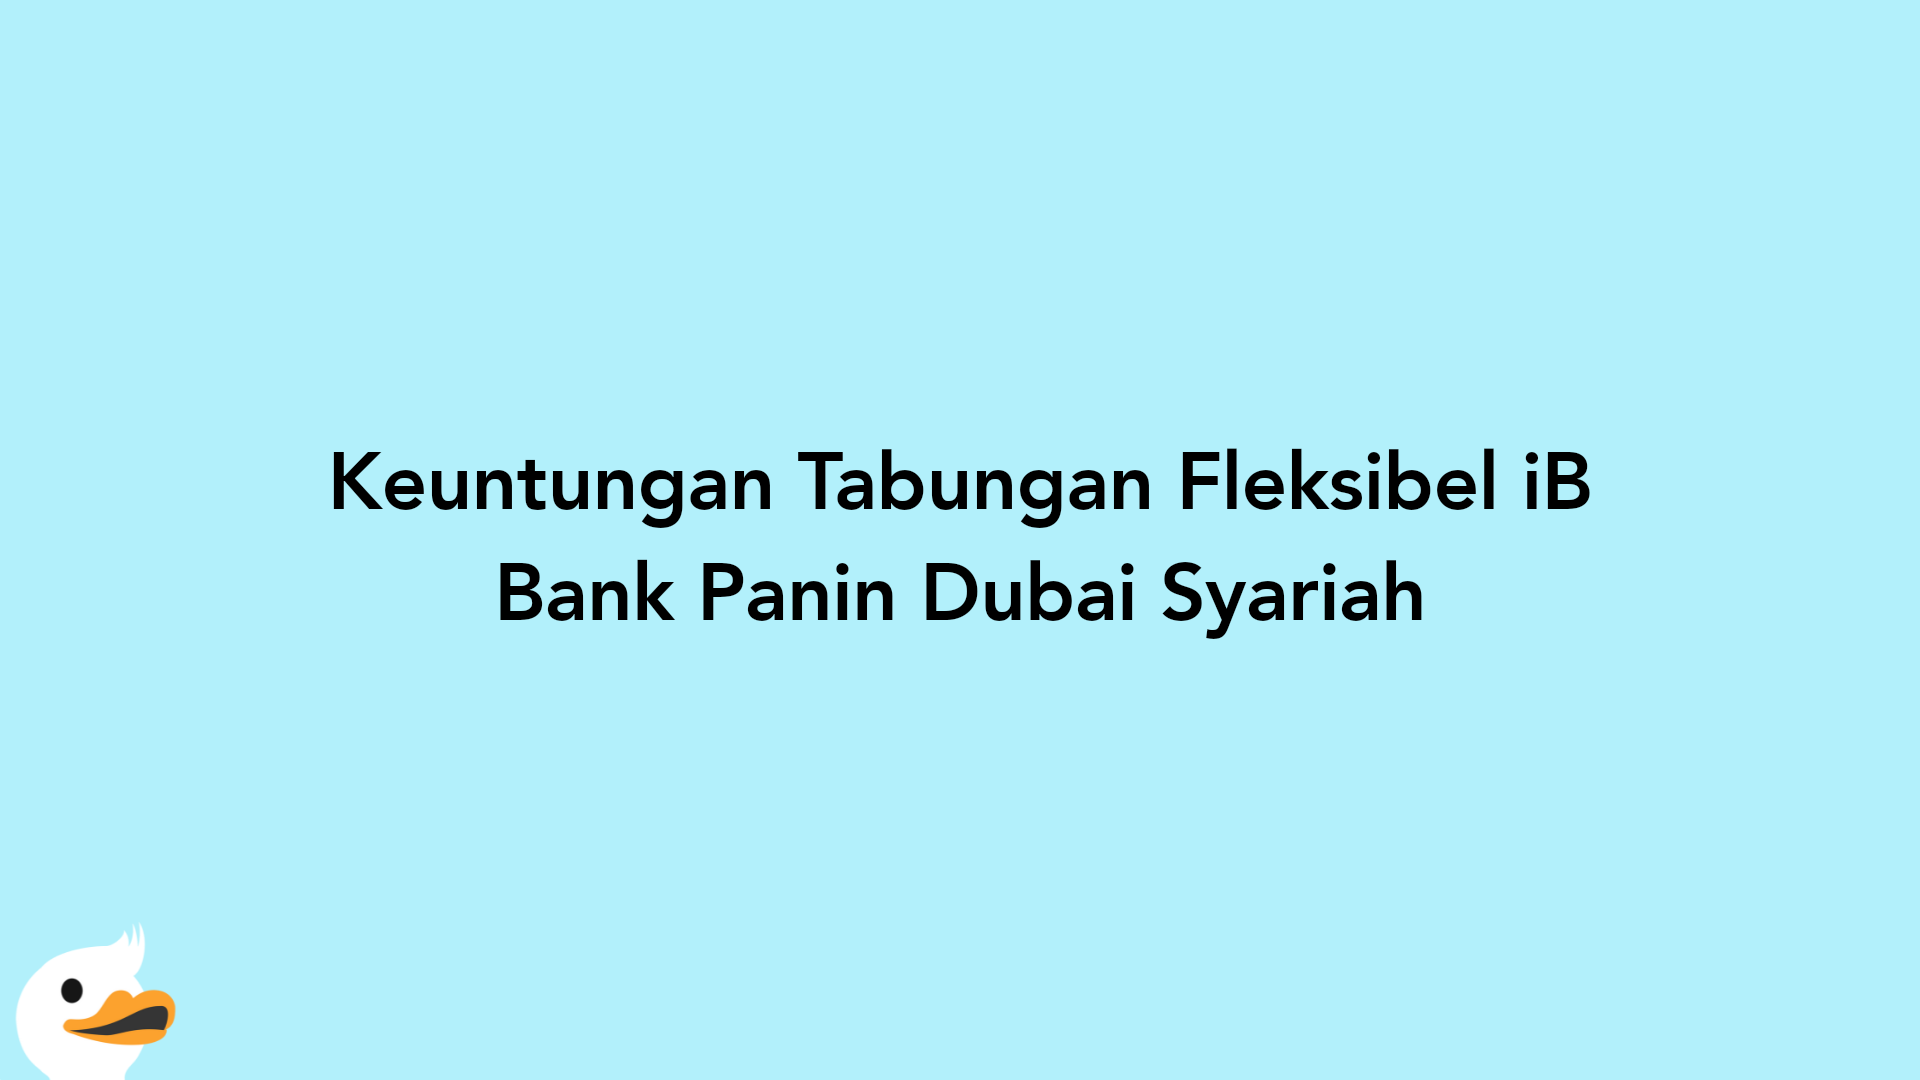 Keuntungan Tabungan Fleksibel iB Bank Panin Dubai Syariah